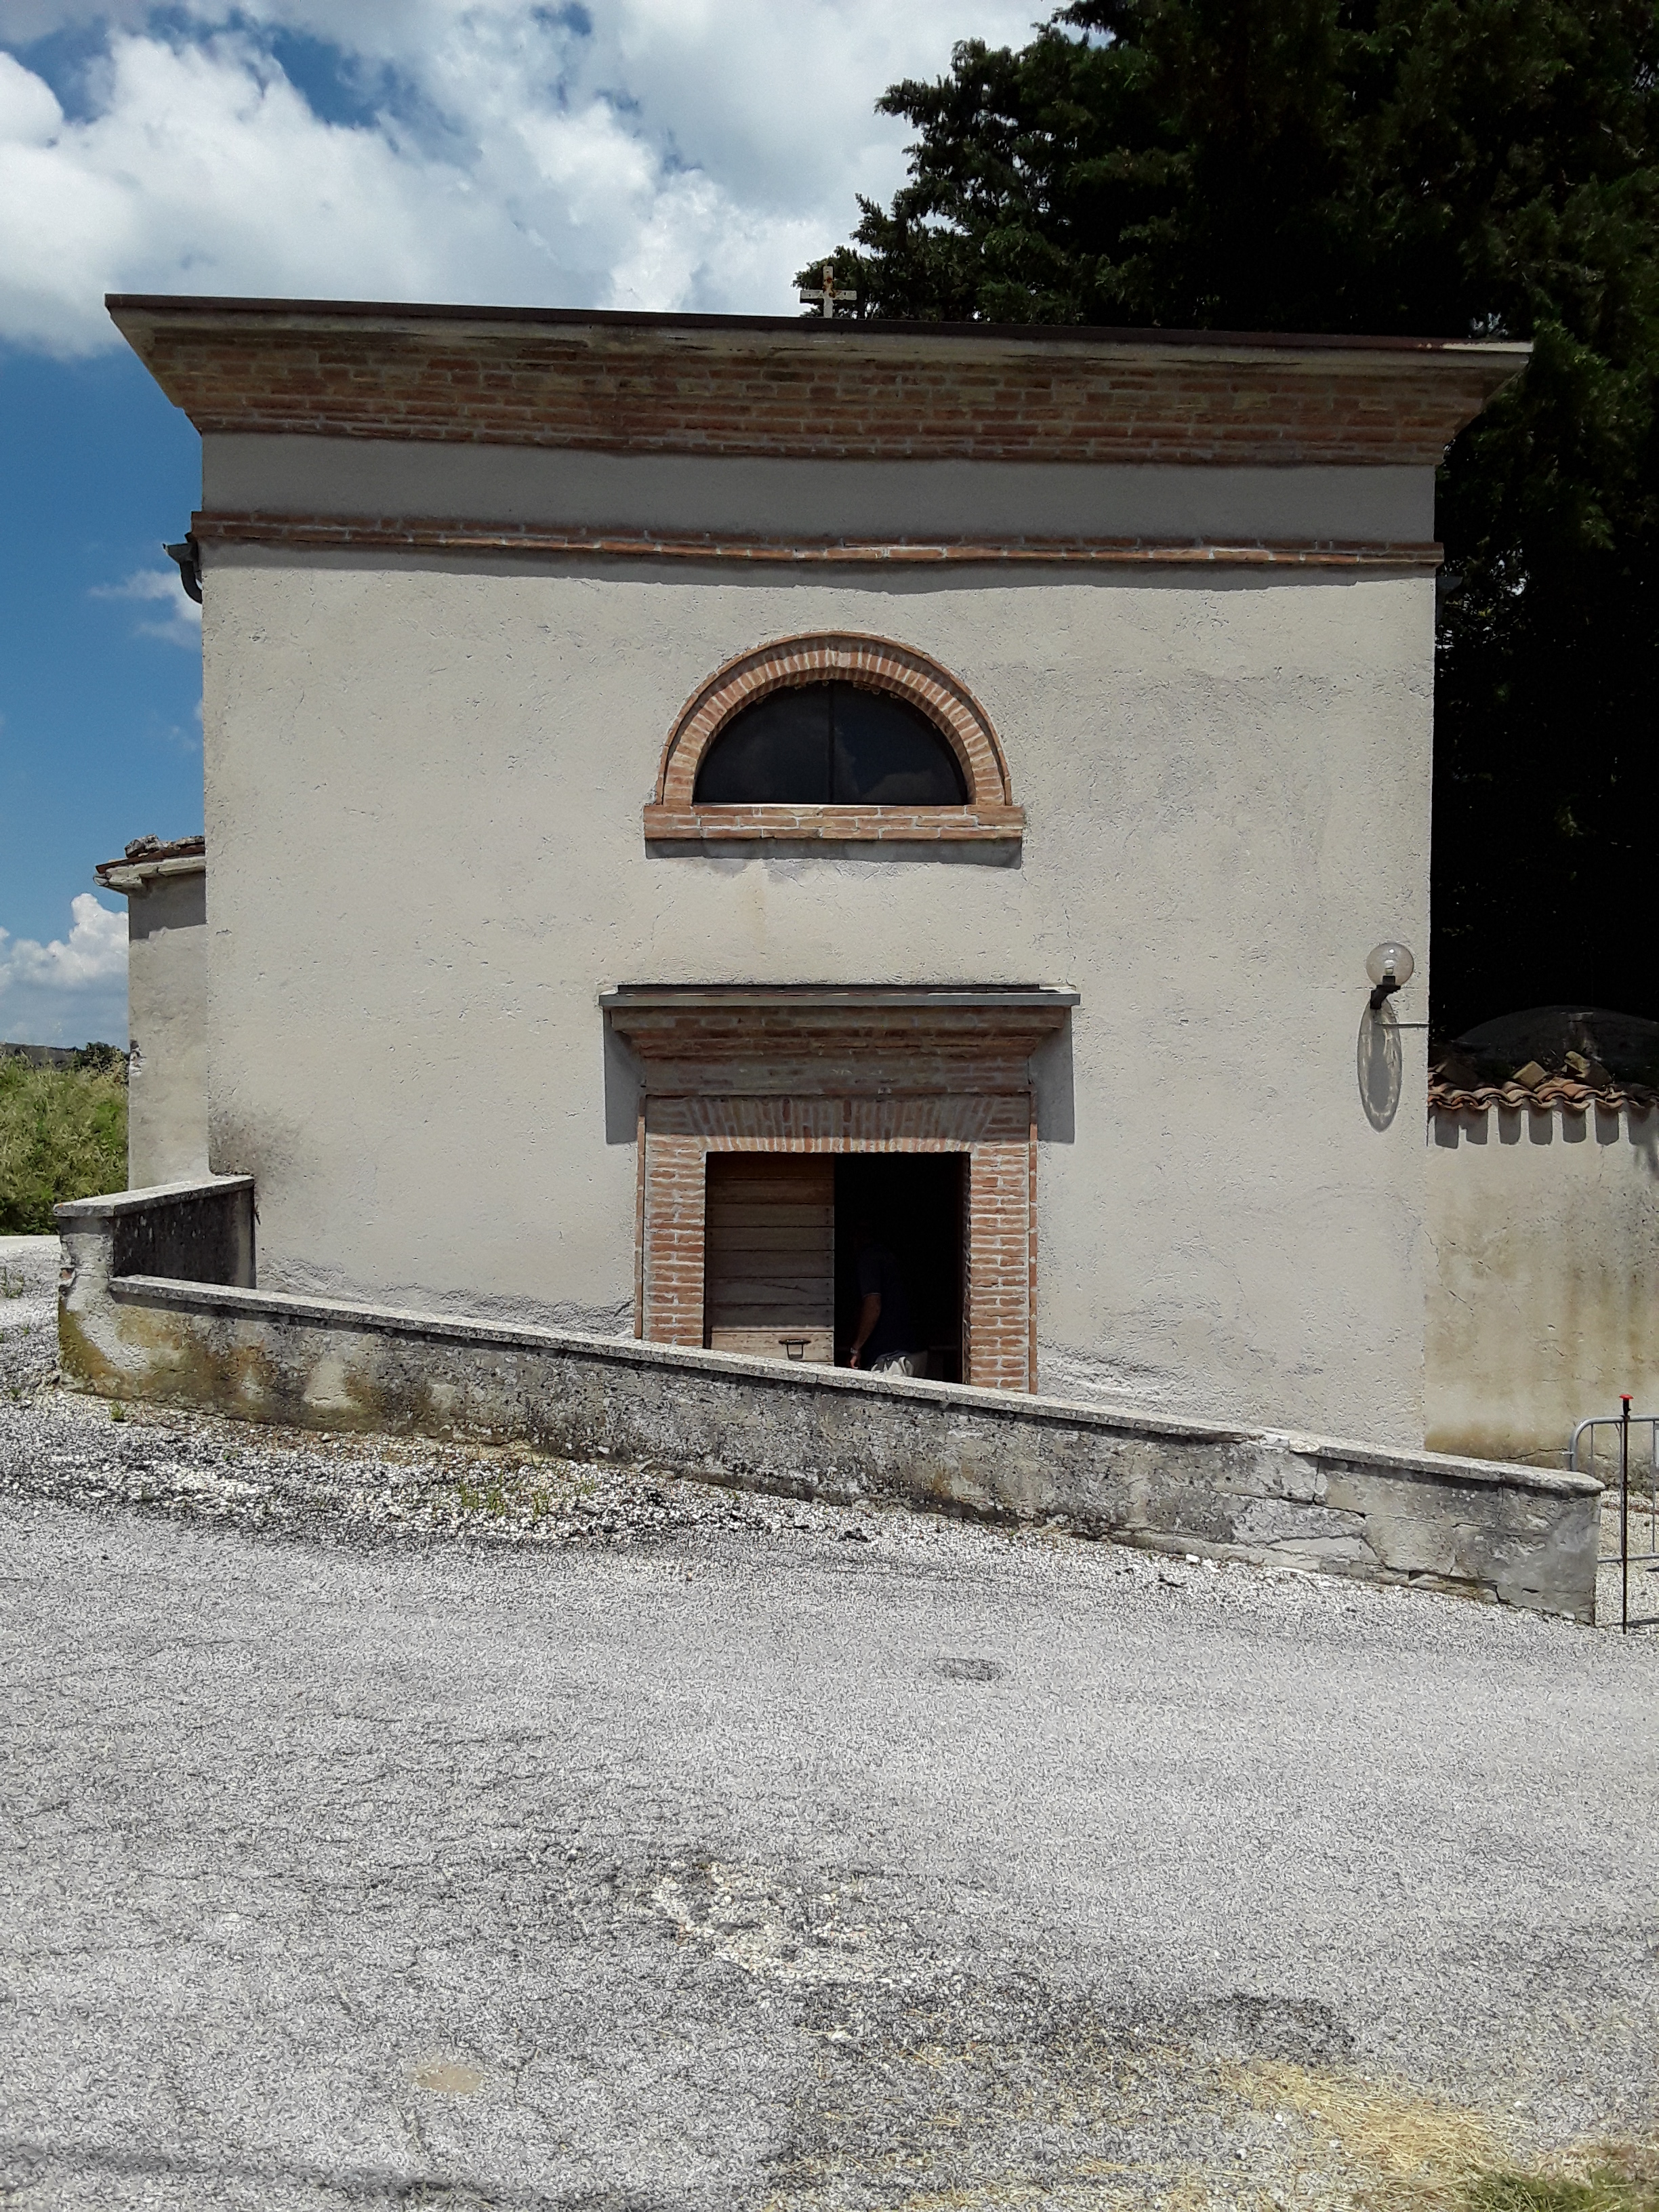 Camera mortuaria del cimitero di Castel S. Maria (camera mortuaria) - Castelraimondo (MC)  (XX)